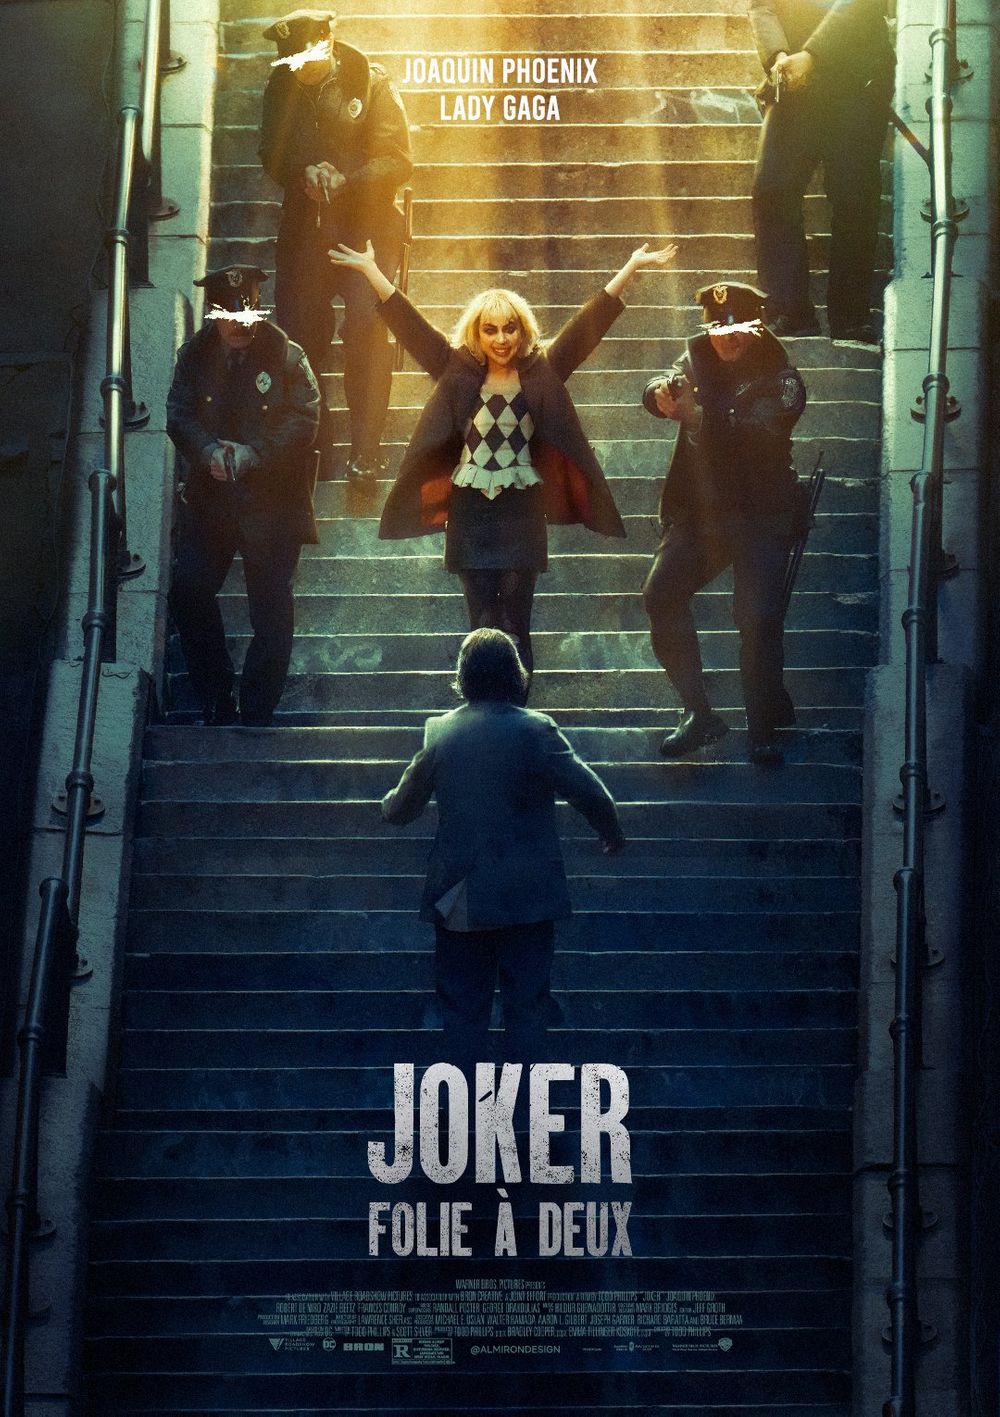 Joker: Folie A Deux Movie Review